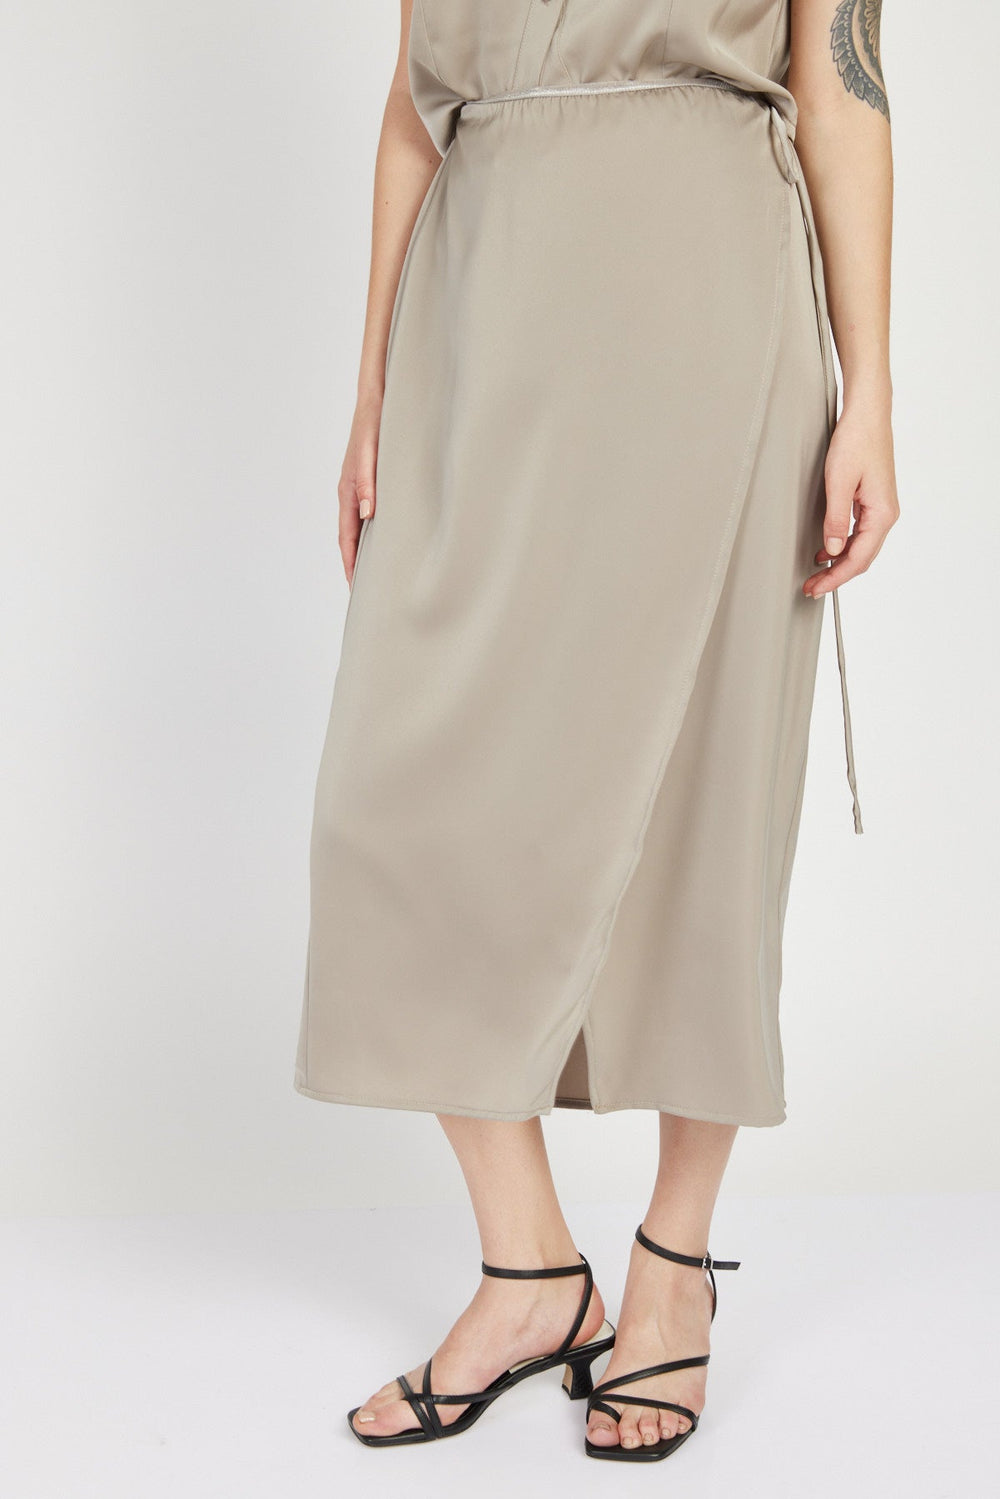 חצאית קשירה מידי אטלס בצבע חאקי - Razili Studio